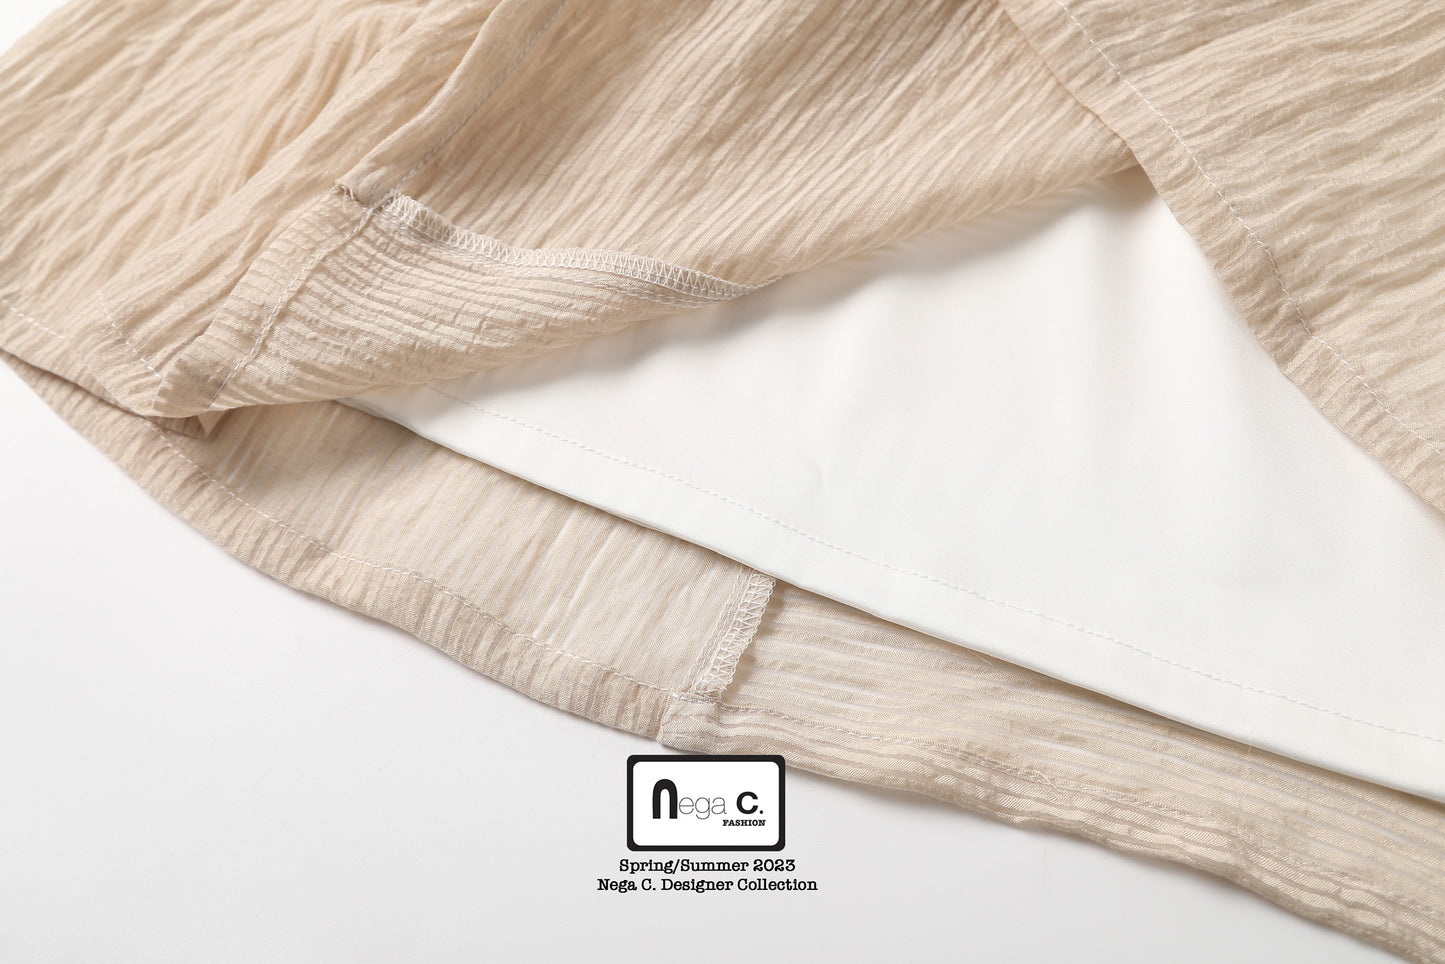 Nega C. Elegant Pleated Hem Mid-Length Skirt |Beige| With lining